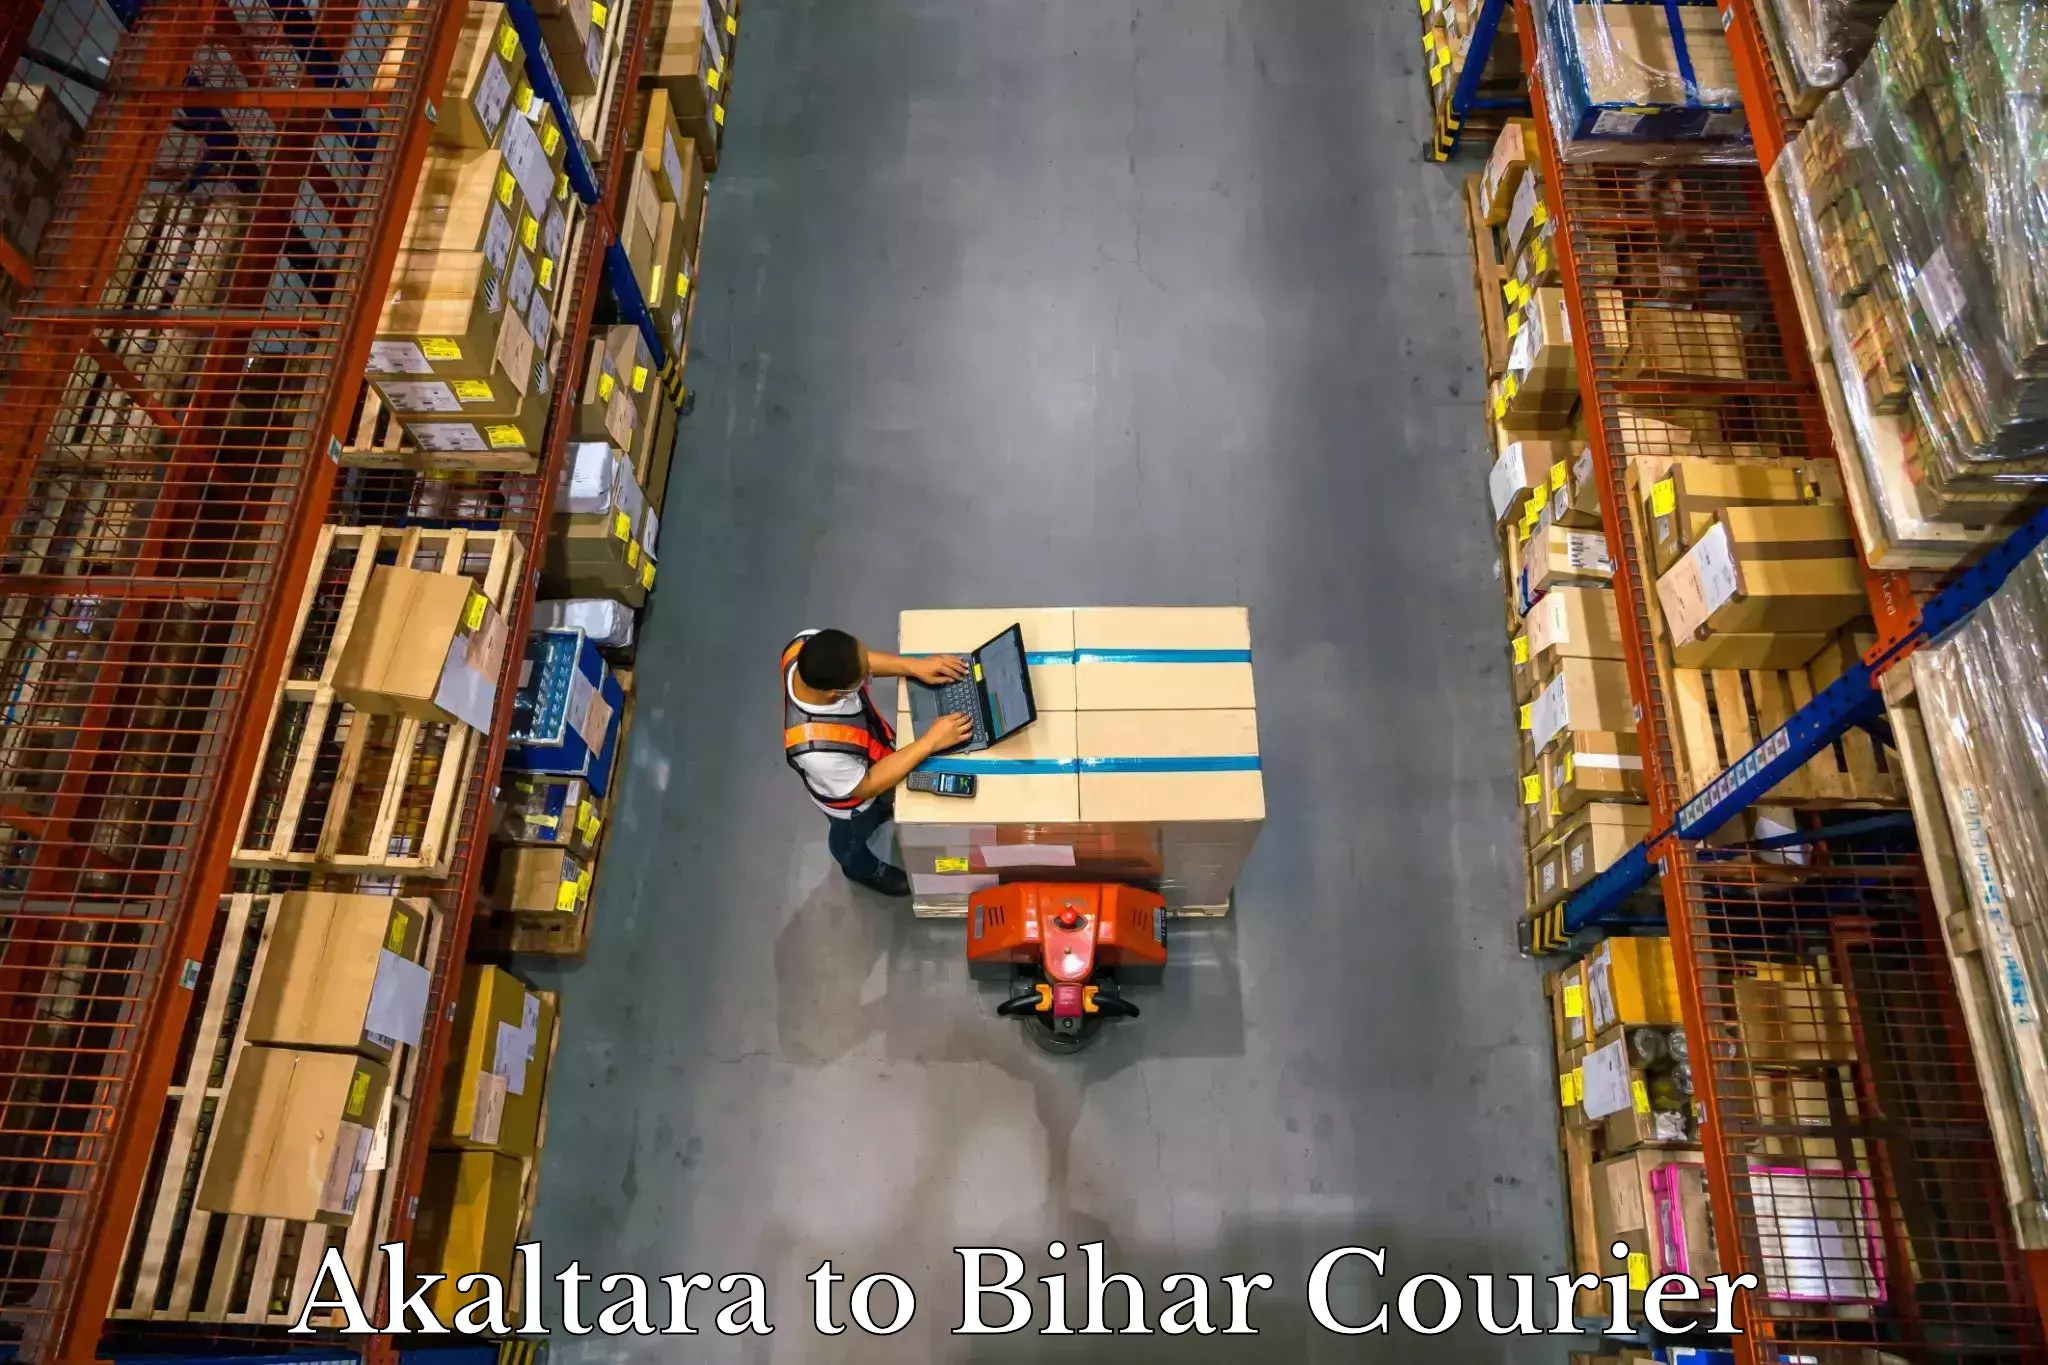 Baggage transport innovation Akaltara to Bihar